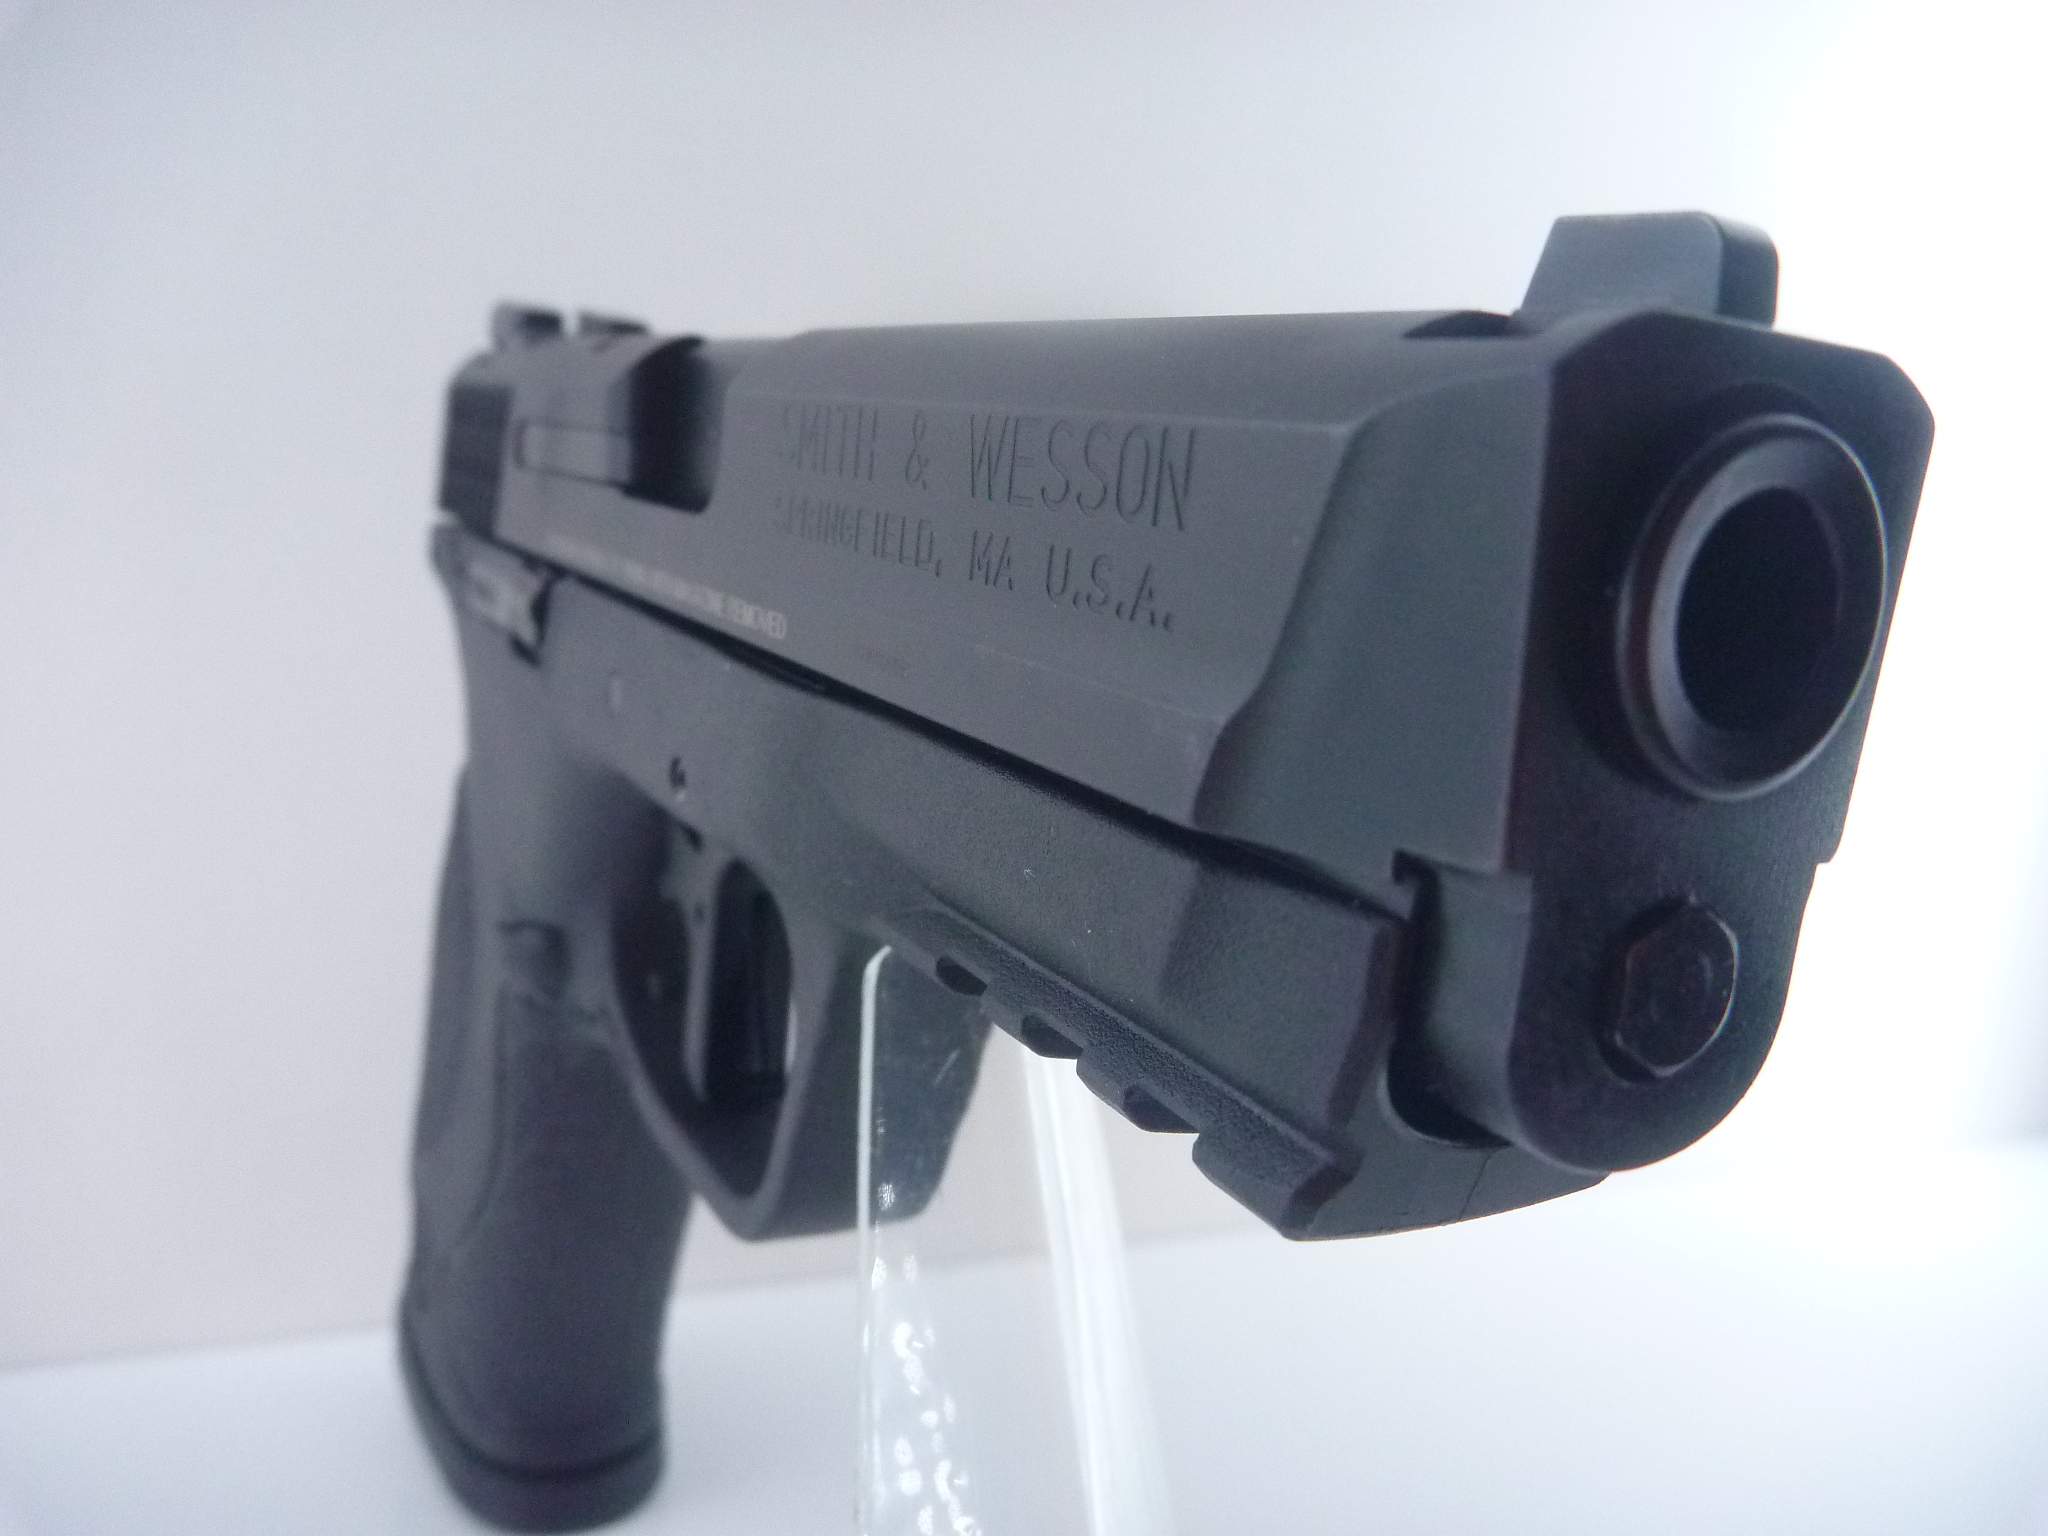 Smith & Wesson M&P9, cal. 9mm Para (état de neuf)